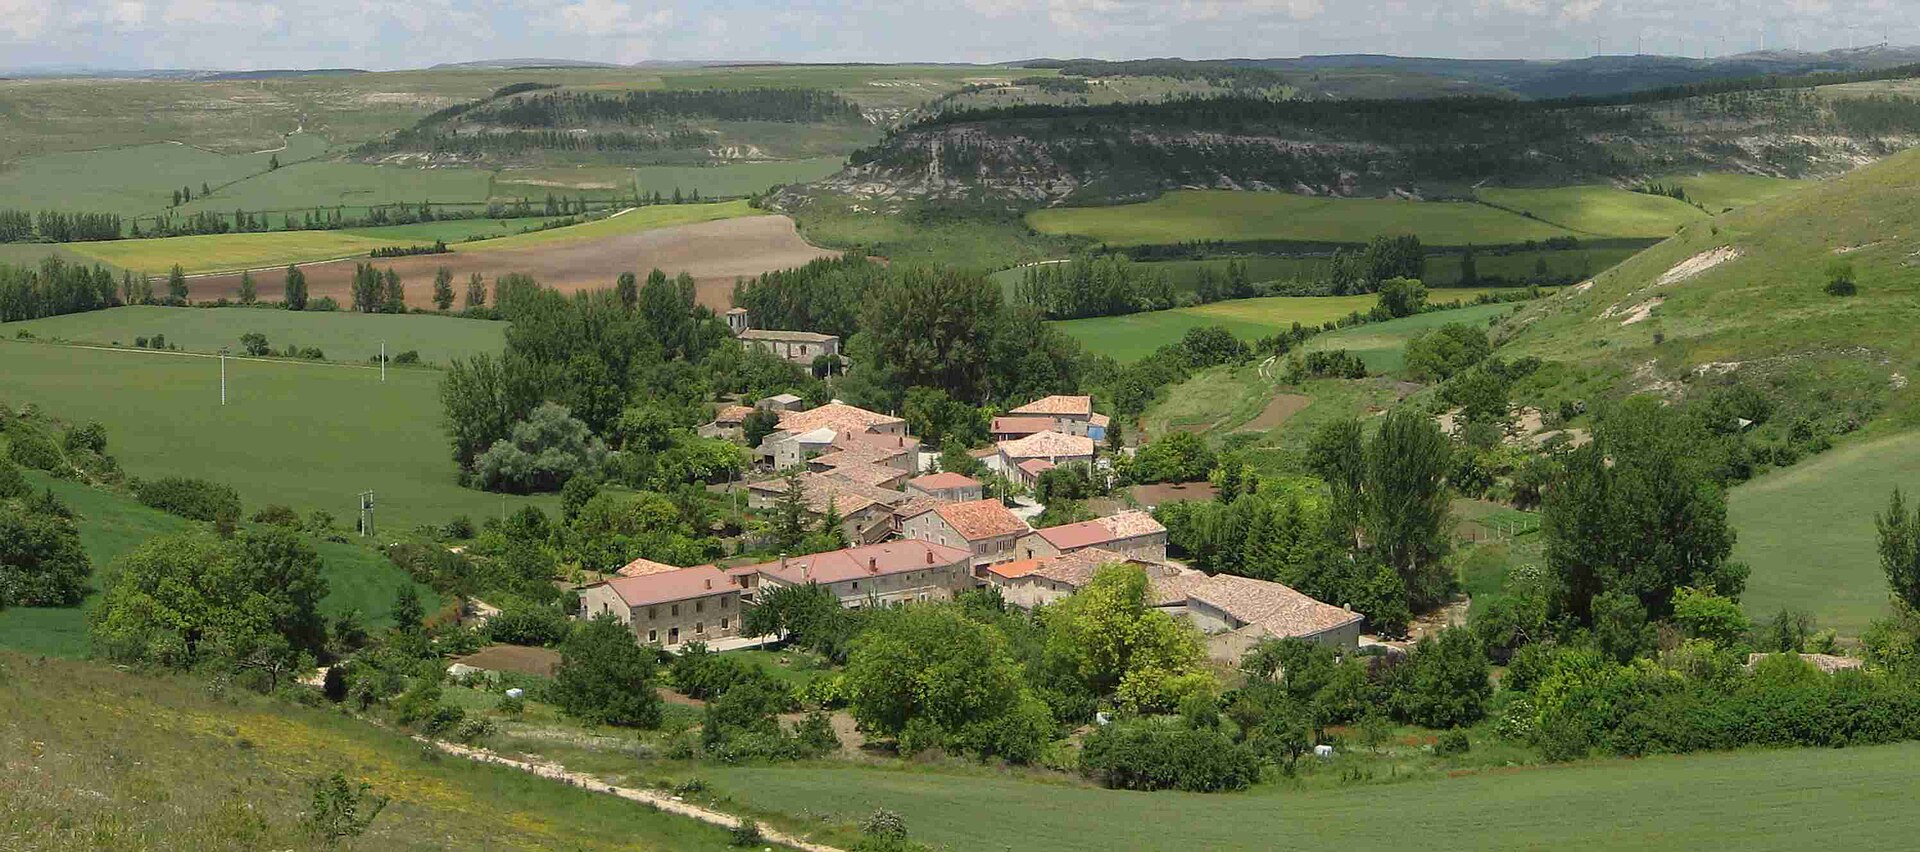 Vista general de Borcos, barrio de Las Hormazas (Burgos). Fuente: Wikicommons.